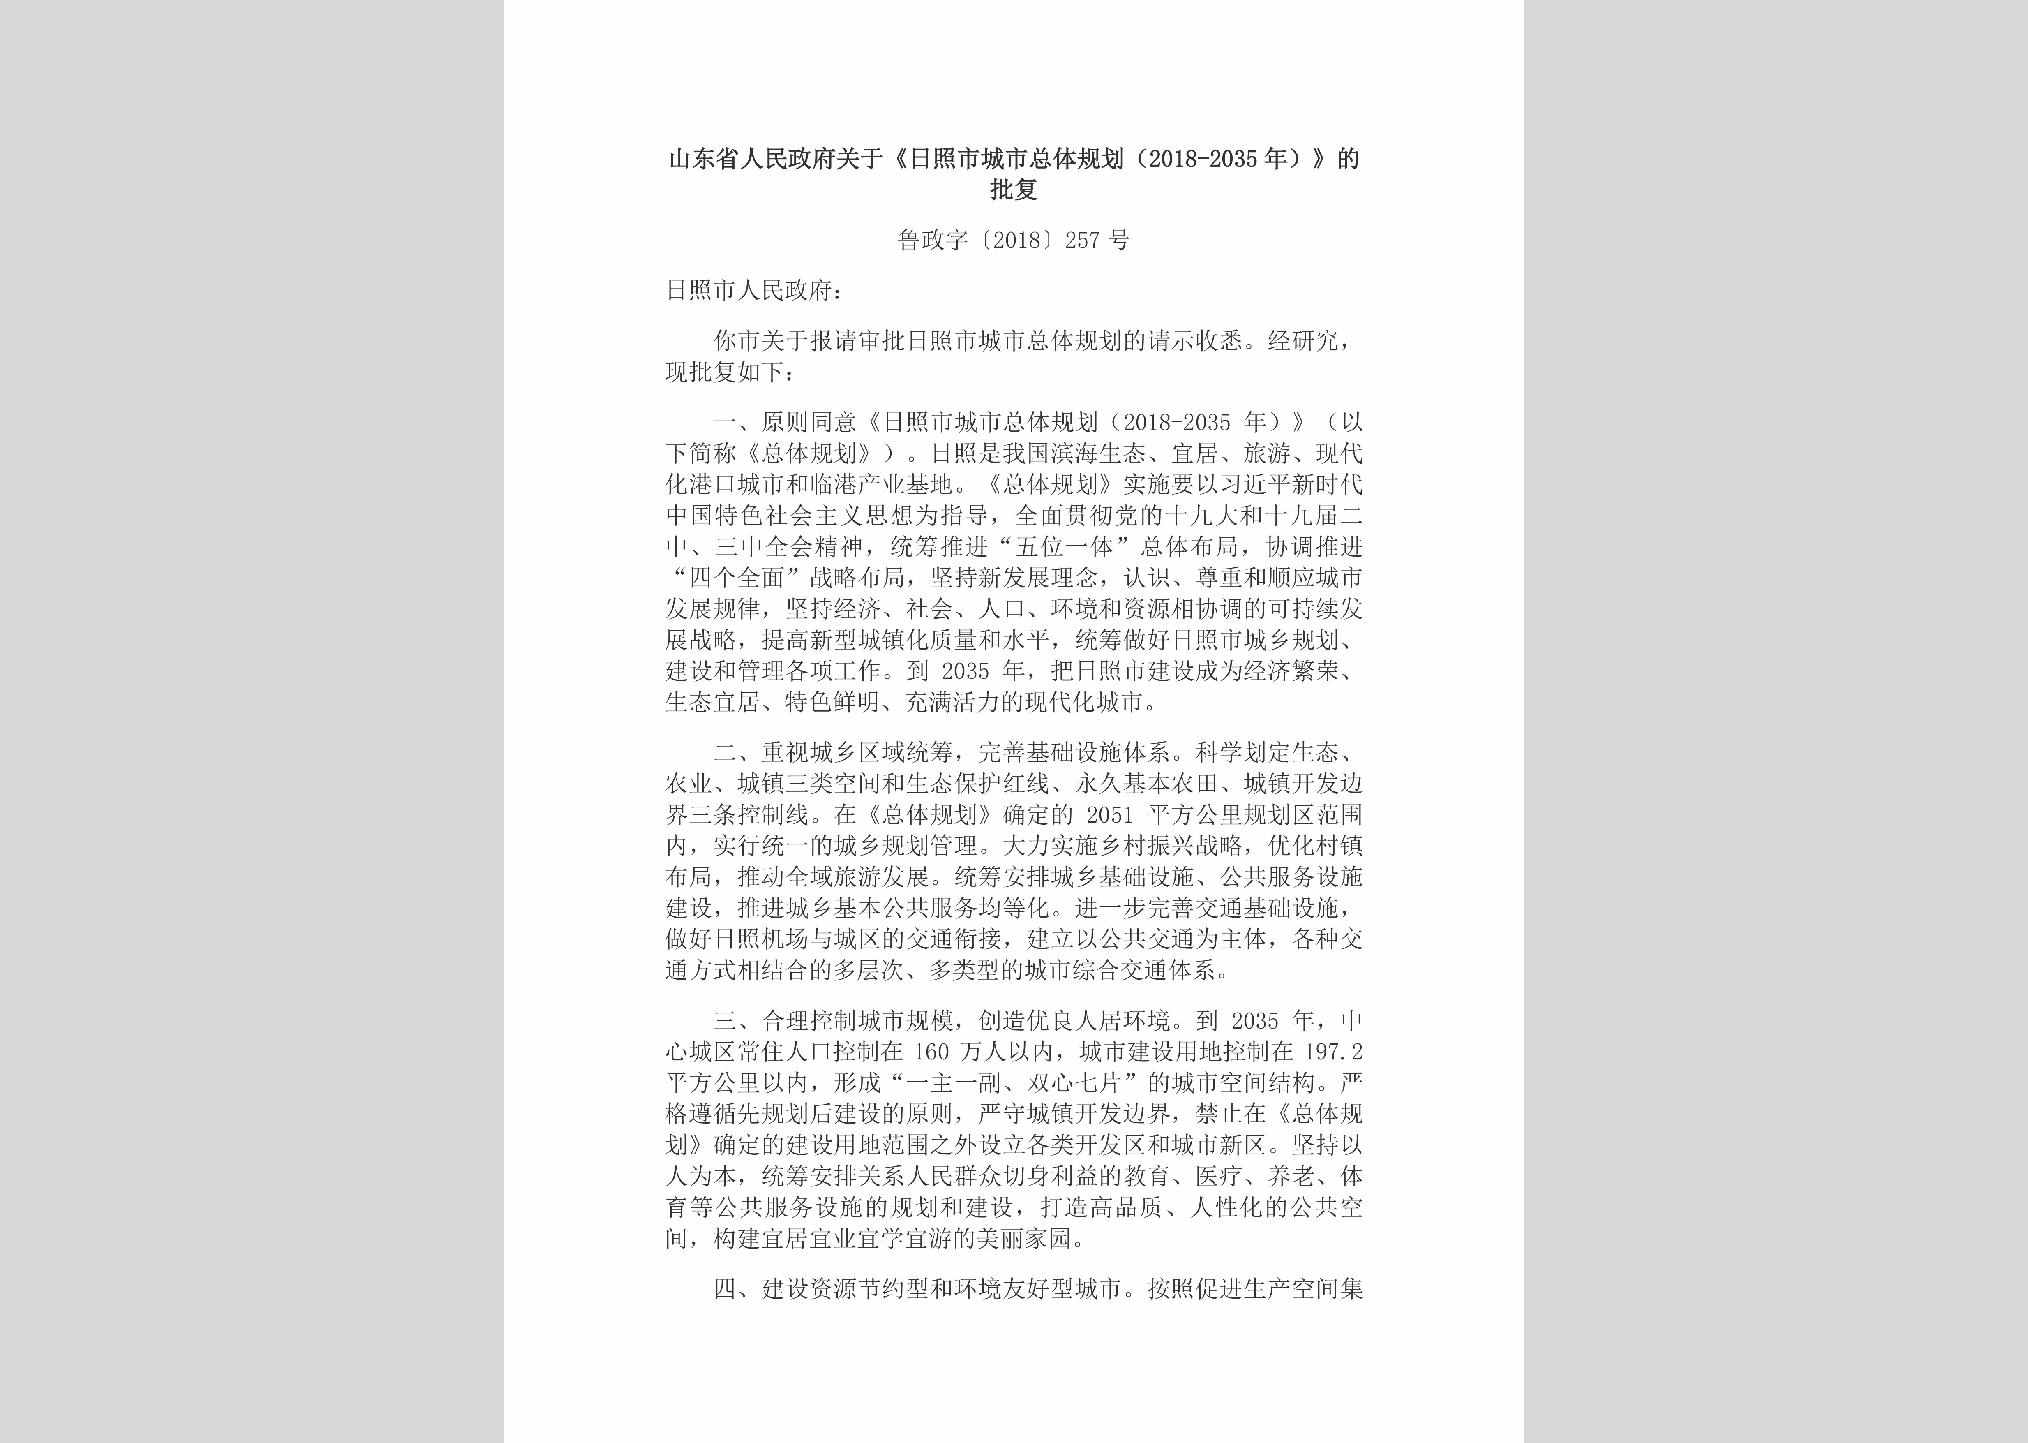 鲁政字[2018]257号：山东省人民政府关于《日照市城市总体规划（2018-2035年）》的批复